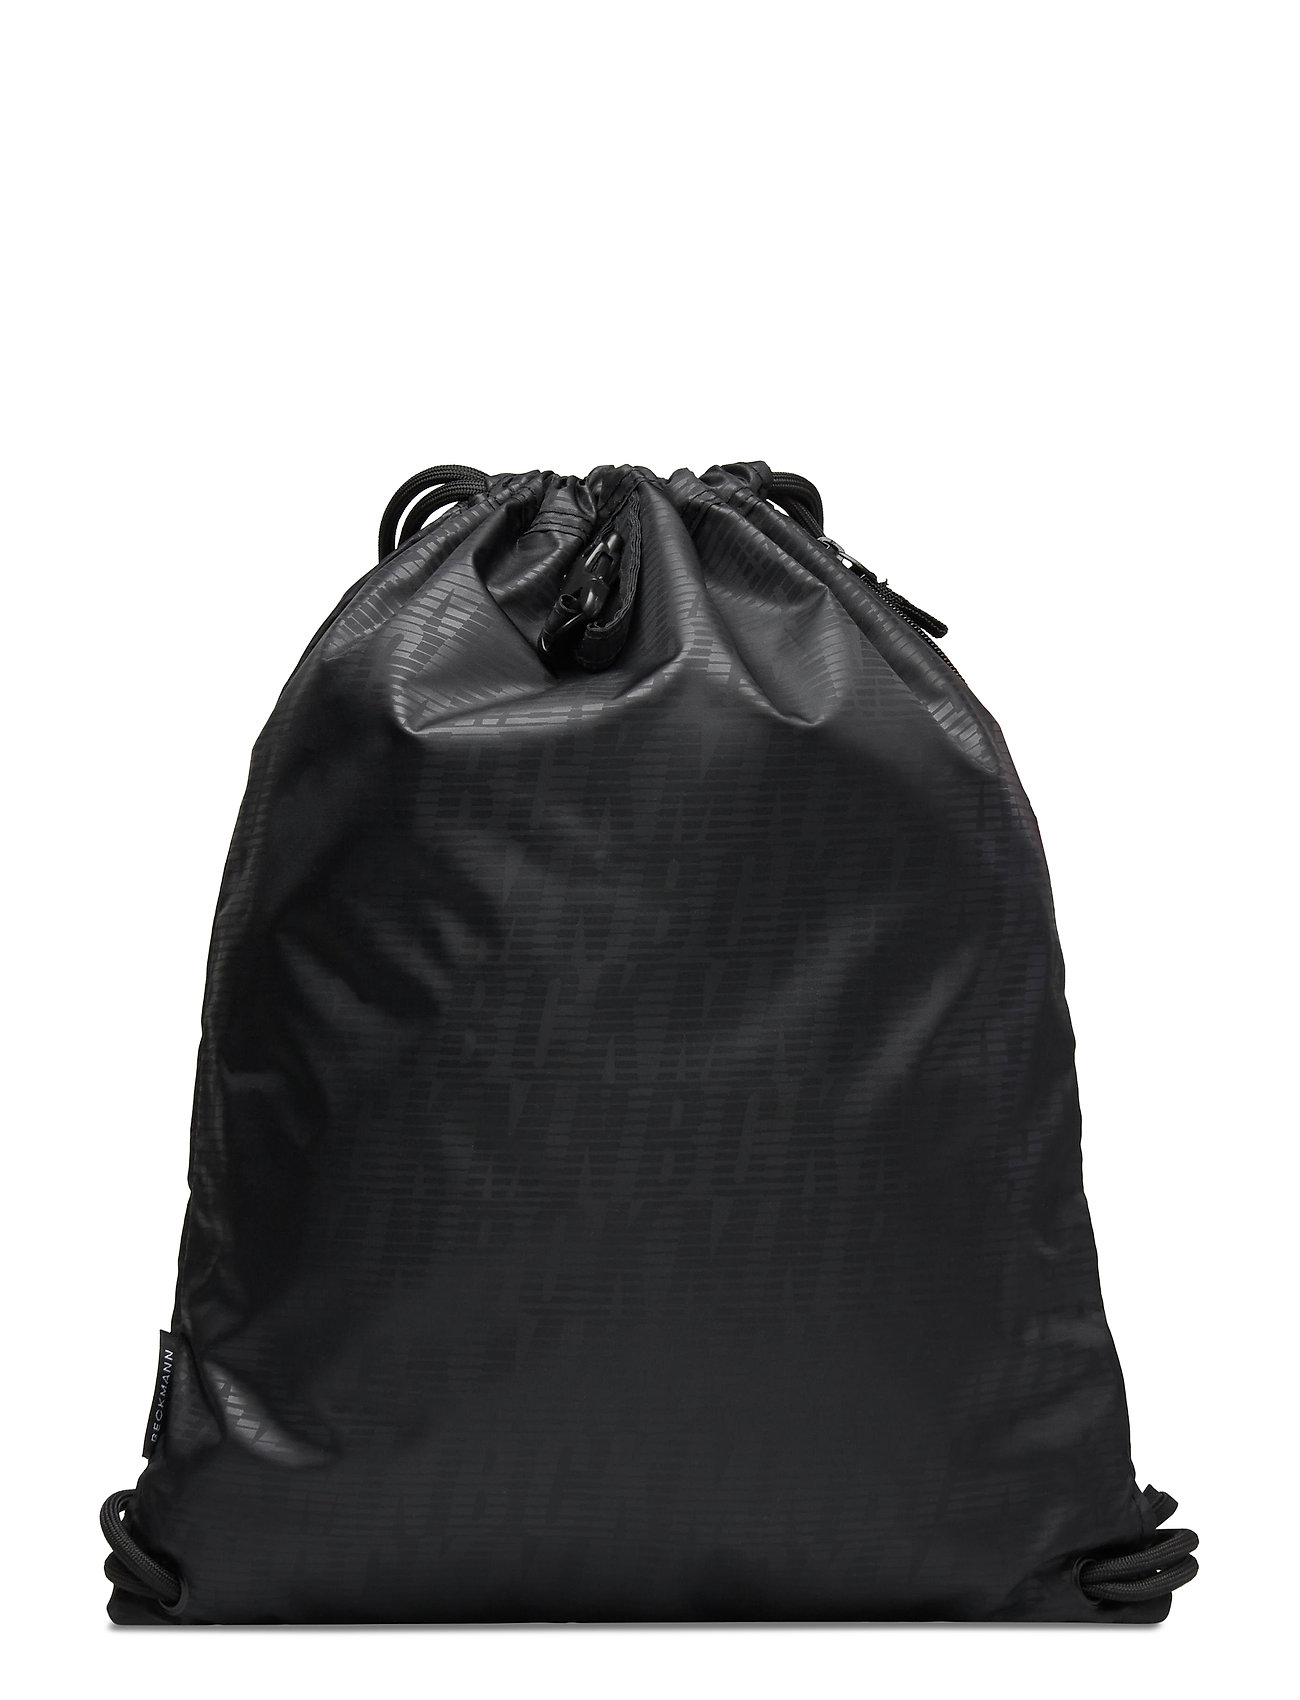 Gym Net - Black Accessories Bags Backpacks Black Beckmann Of Norway